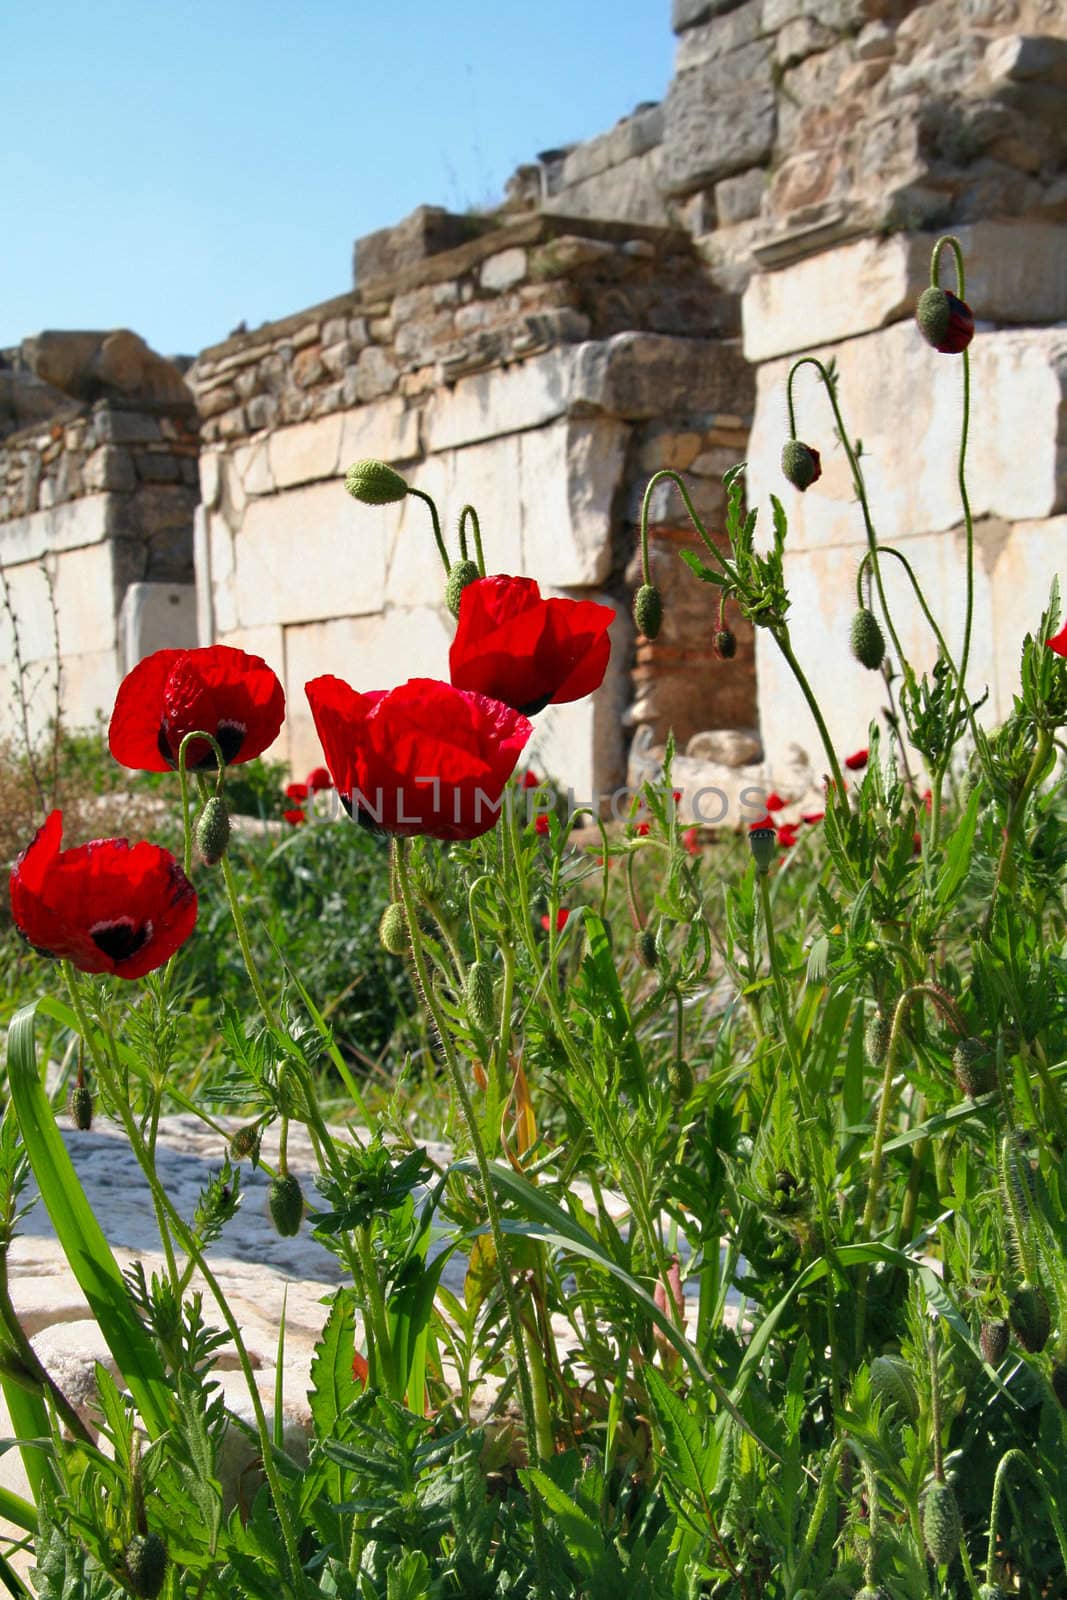 Poppy flowers and stones in Ephesus, Turkey.